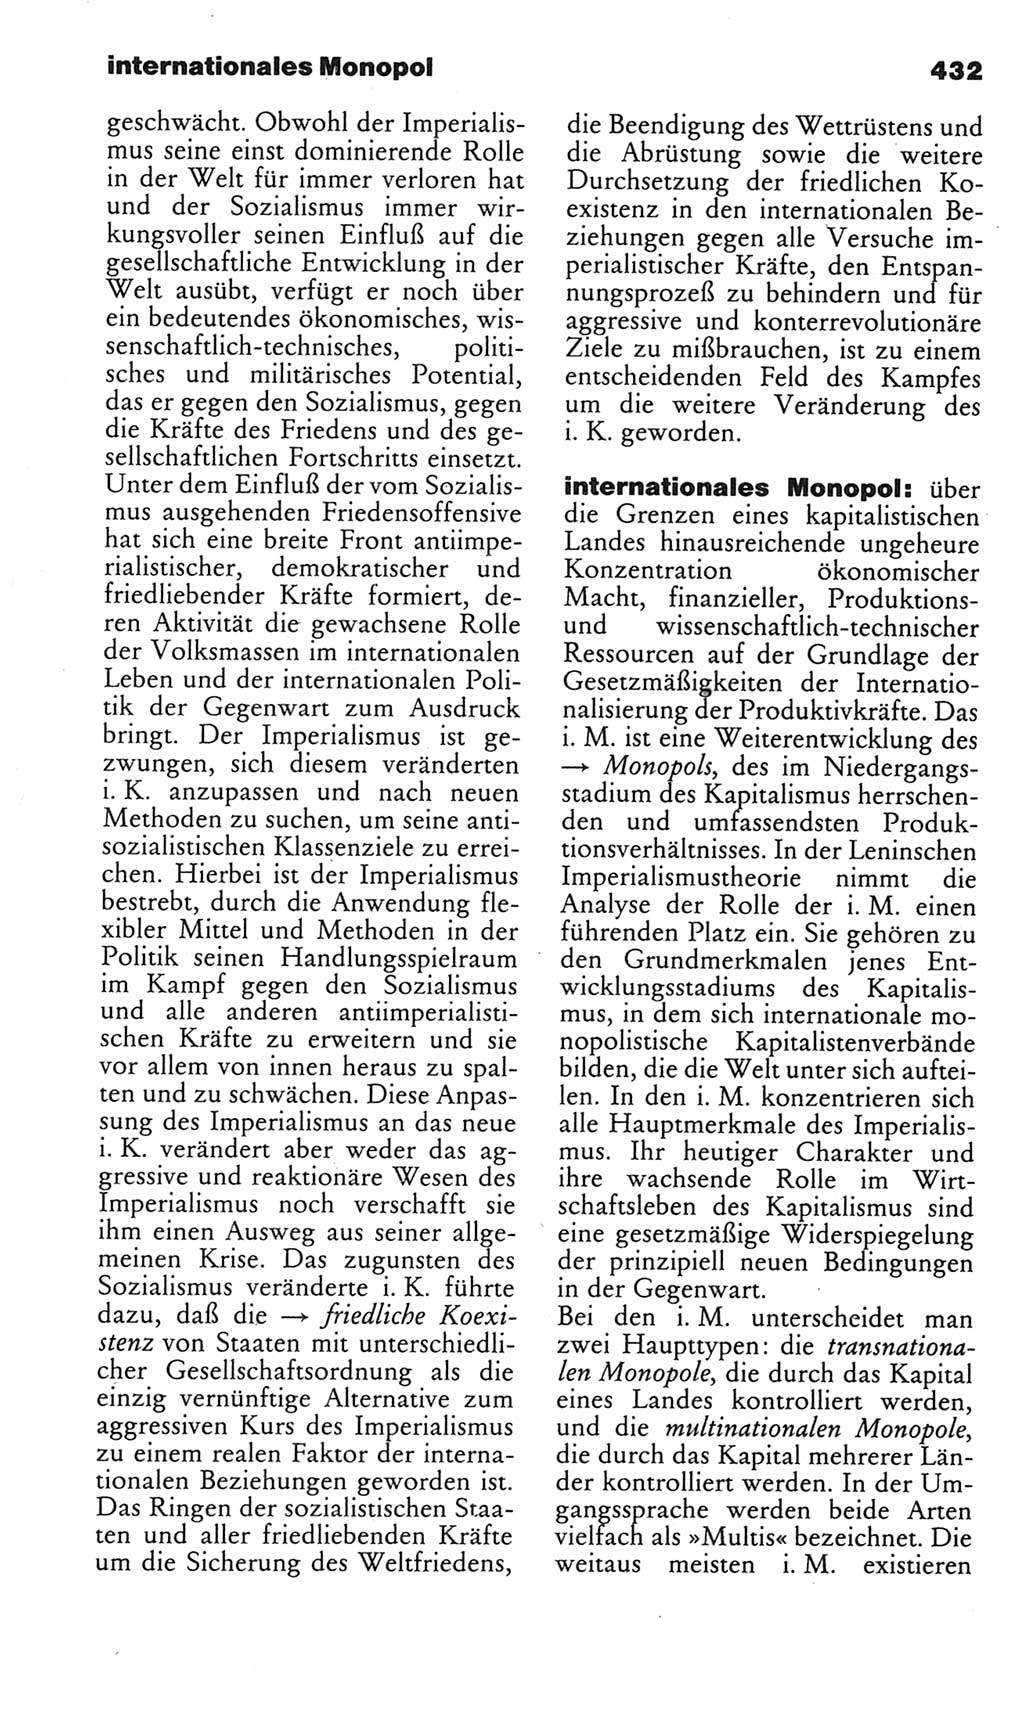 Kleines politisches Wörterbuch [Deutsche Demokratische Republik (DDR)] 1983, Seite 432 (Kl. pol. Wb. DDR 1983, S. 432)